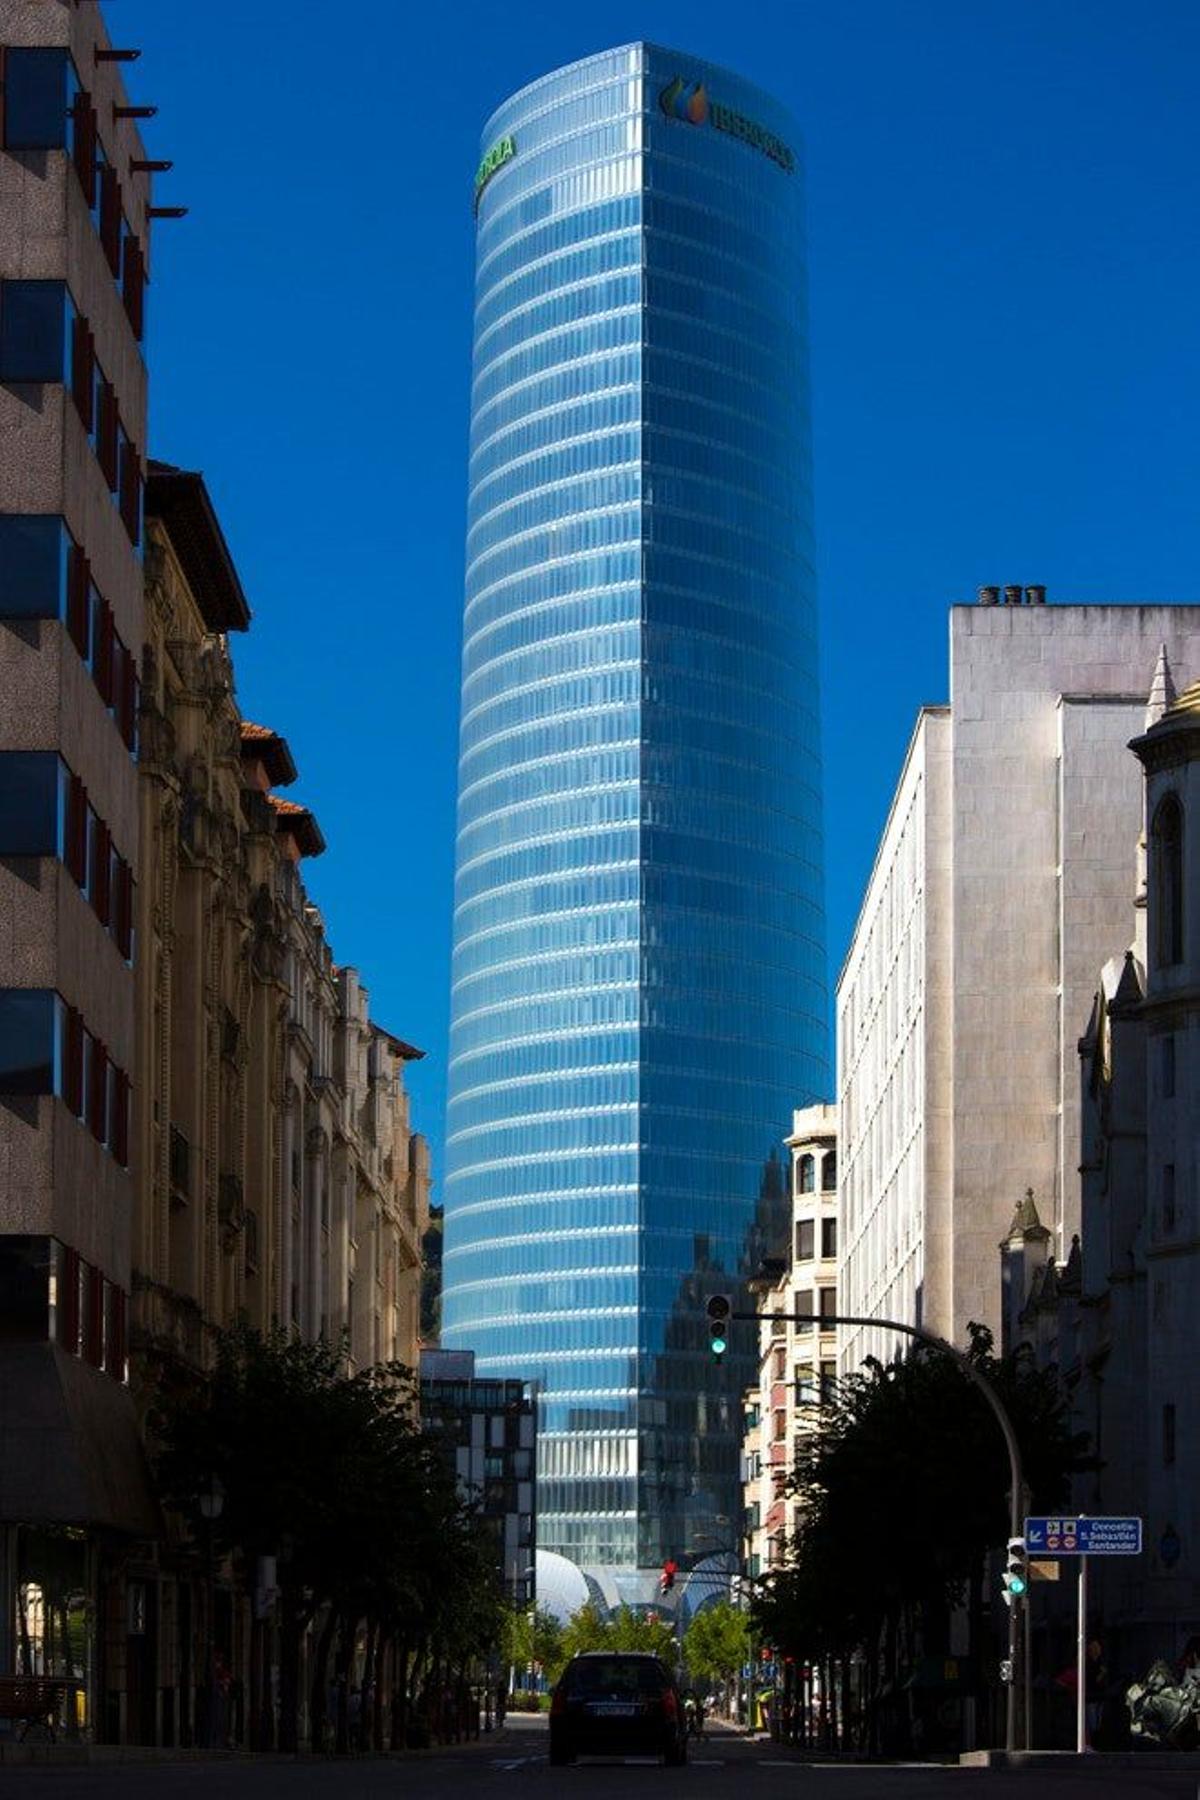 El moderno edificio Iberdrola, situado en el centro de la arquitectura de Bilbao.